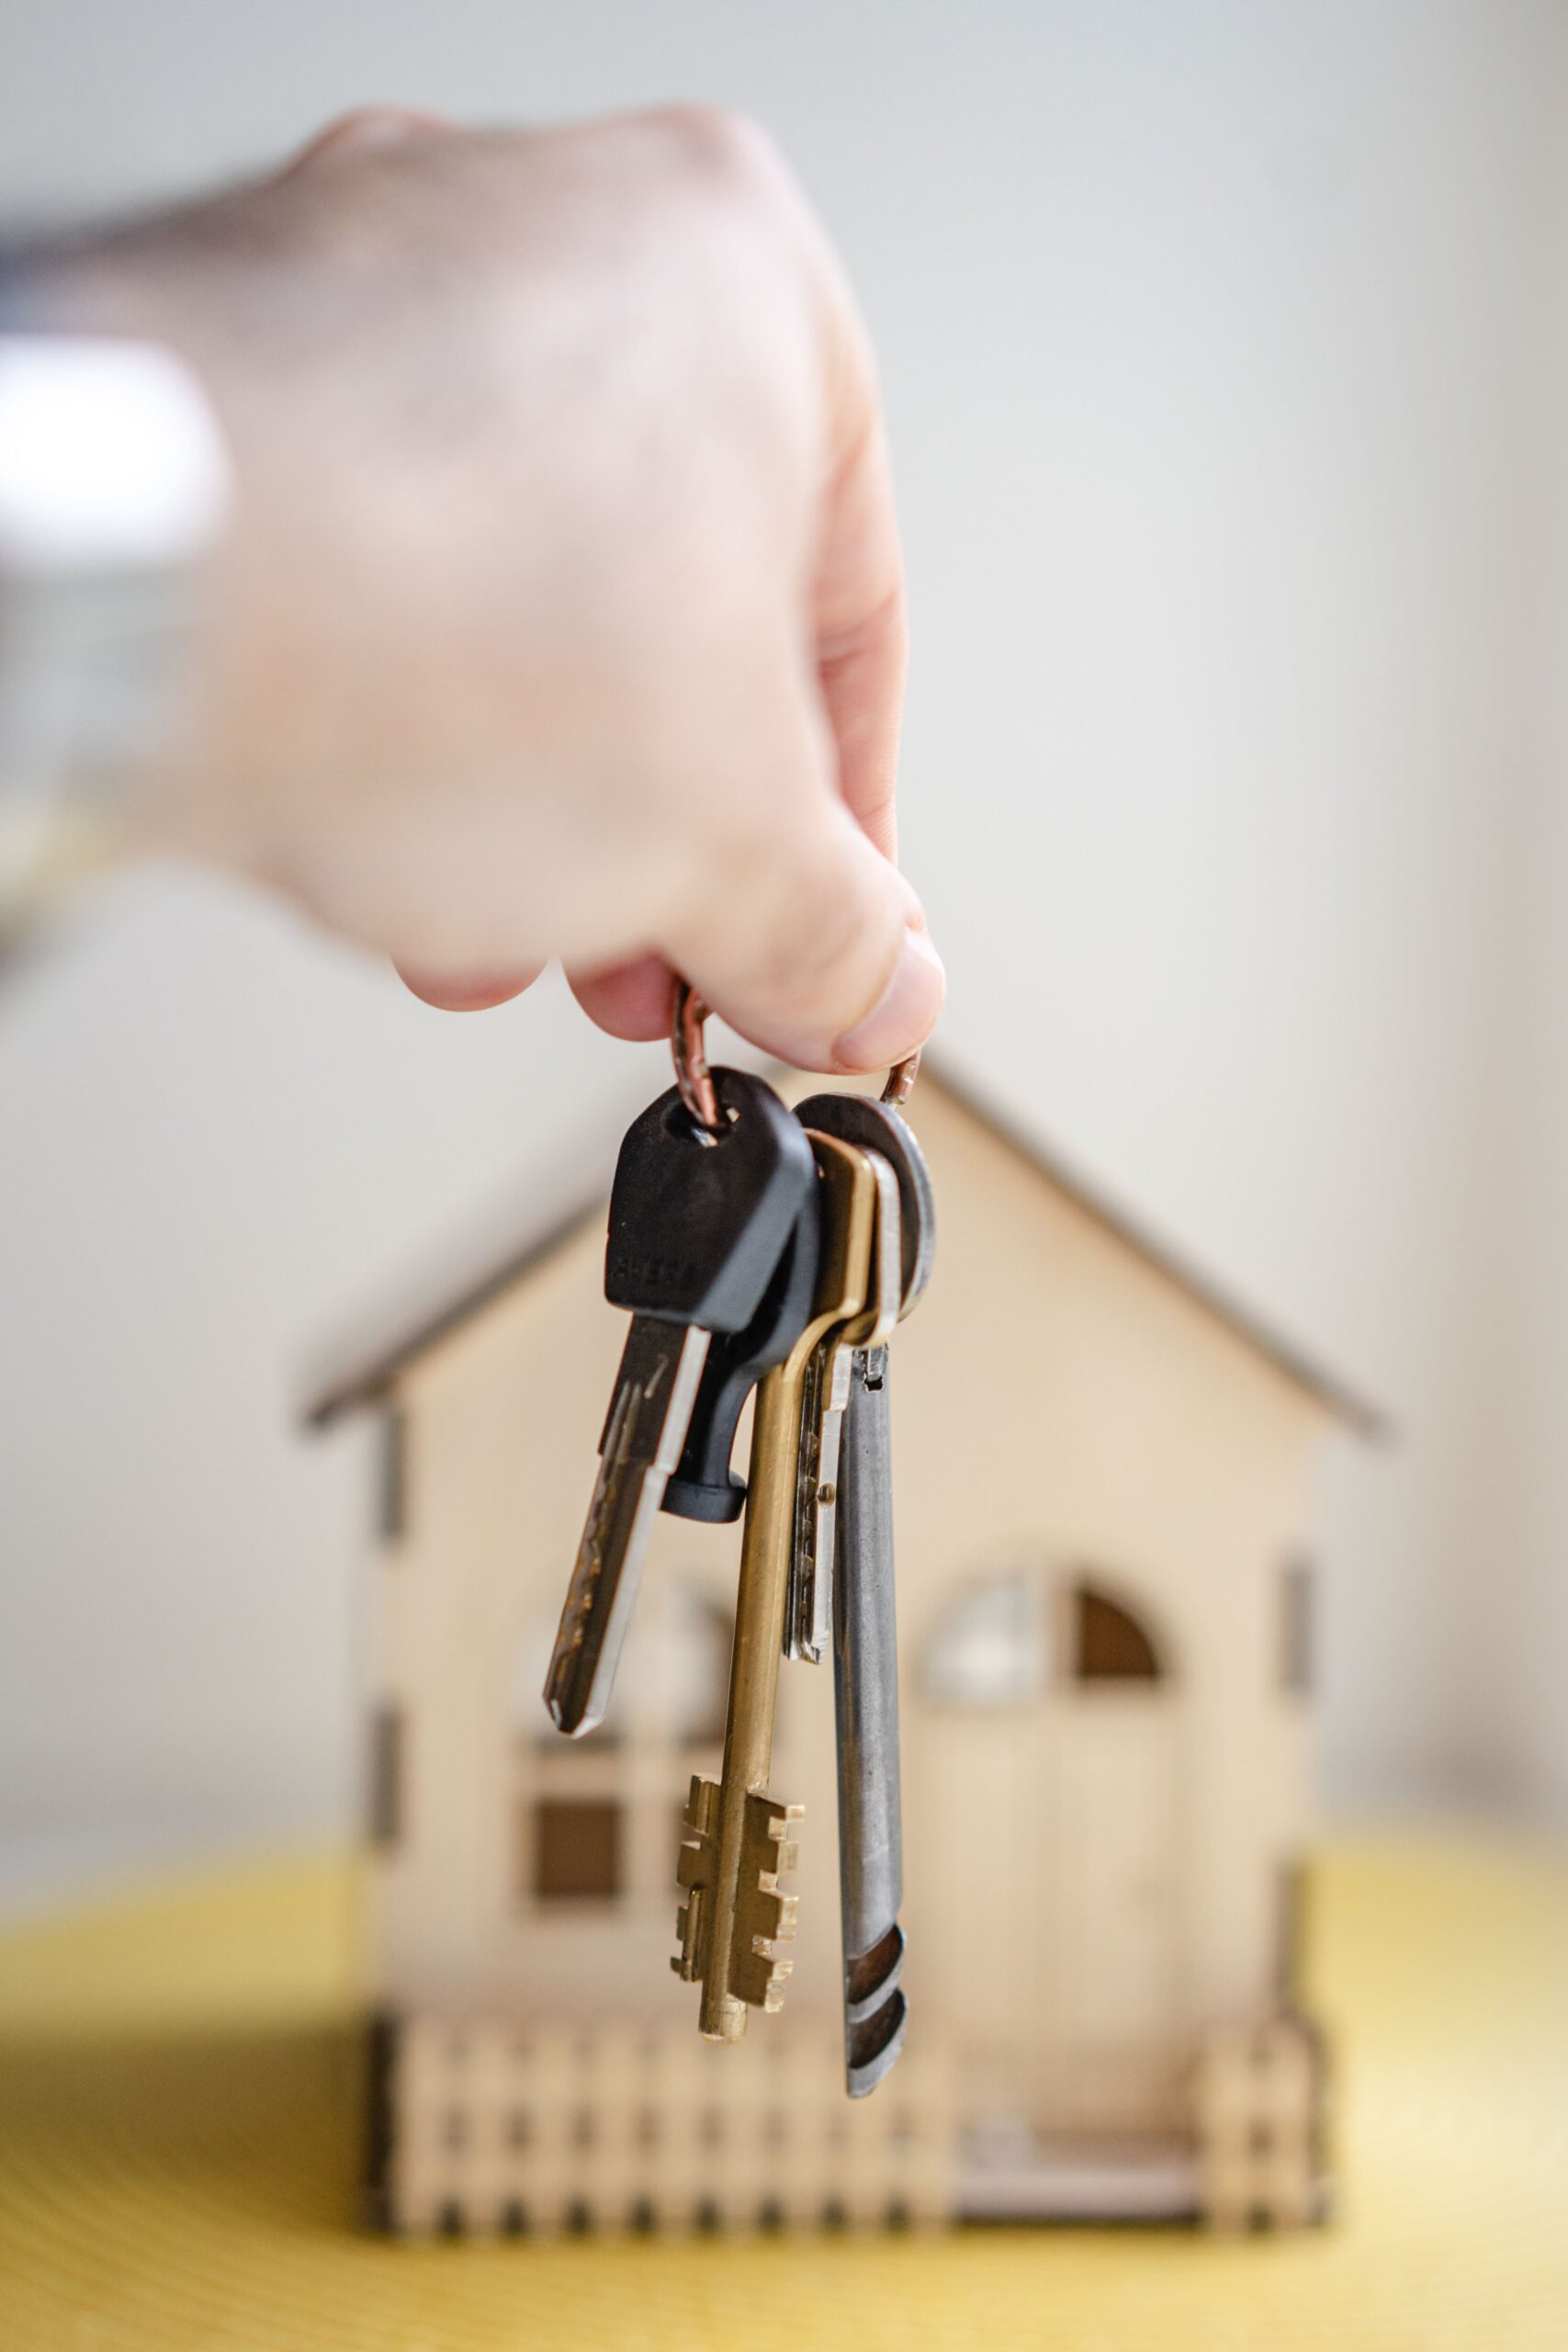 Іпотечні спори: як ефективно оскаржити звернення стягнення на предмет іпотеки